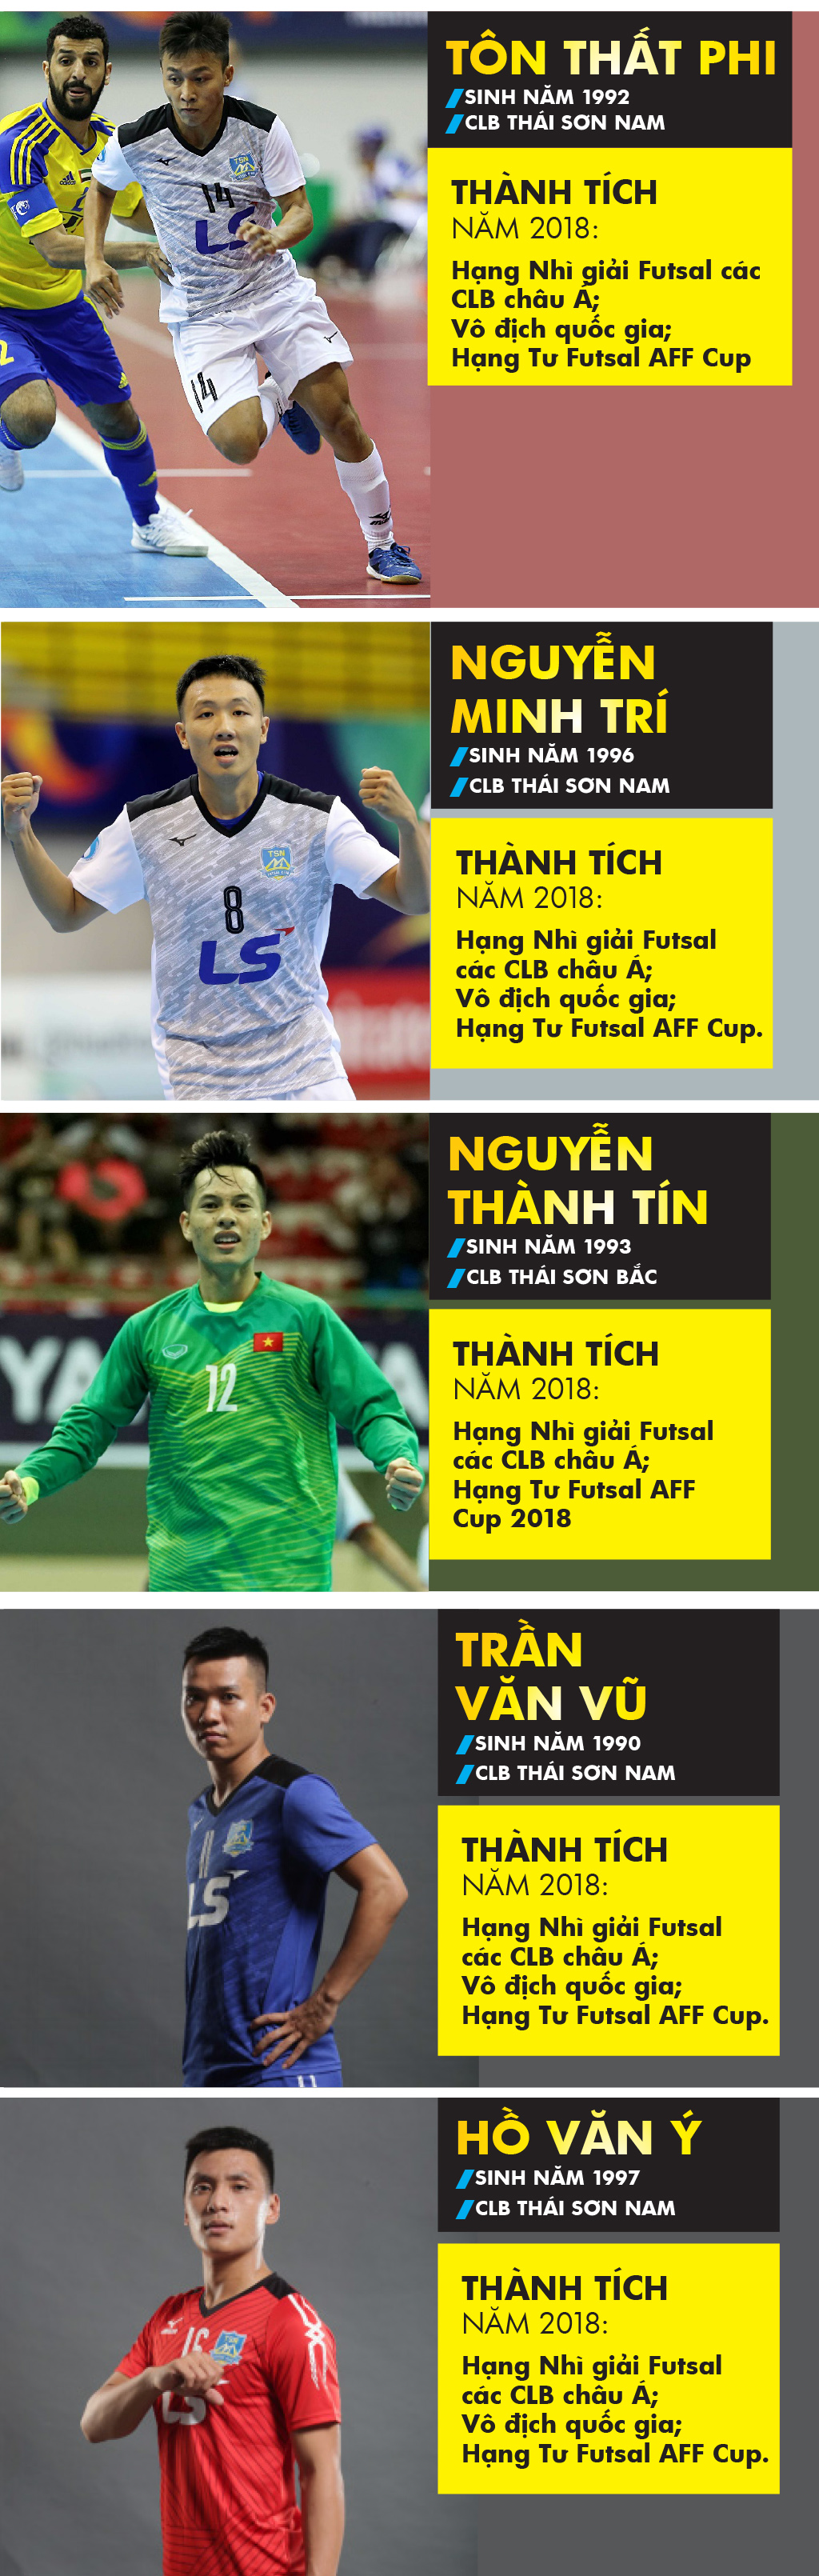 Những cầu thủ nào là ứng viên giải Quả bóng vàng futsal 2018? ảnh 2